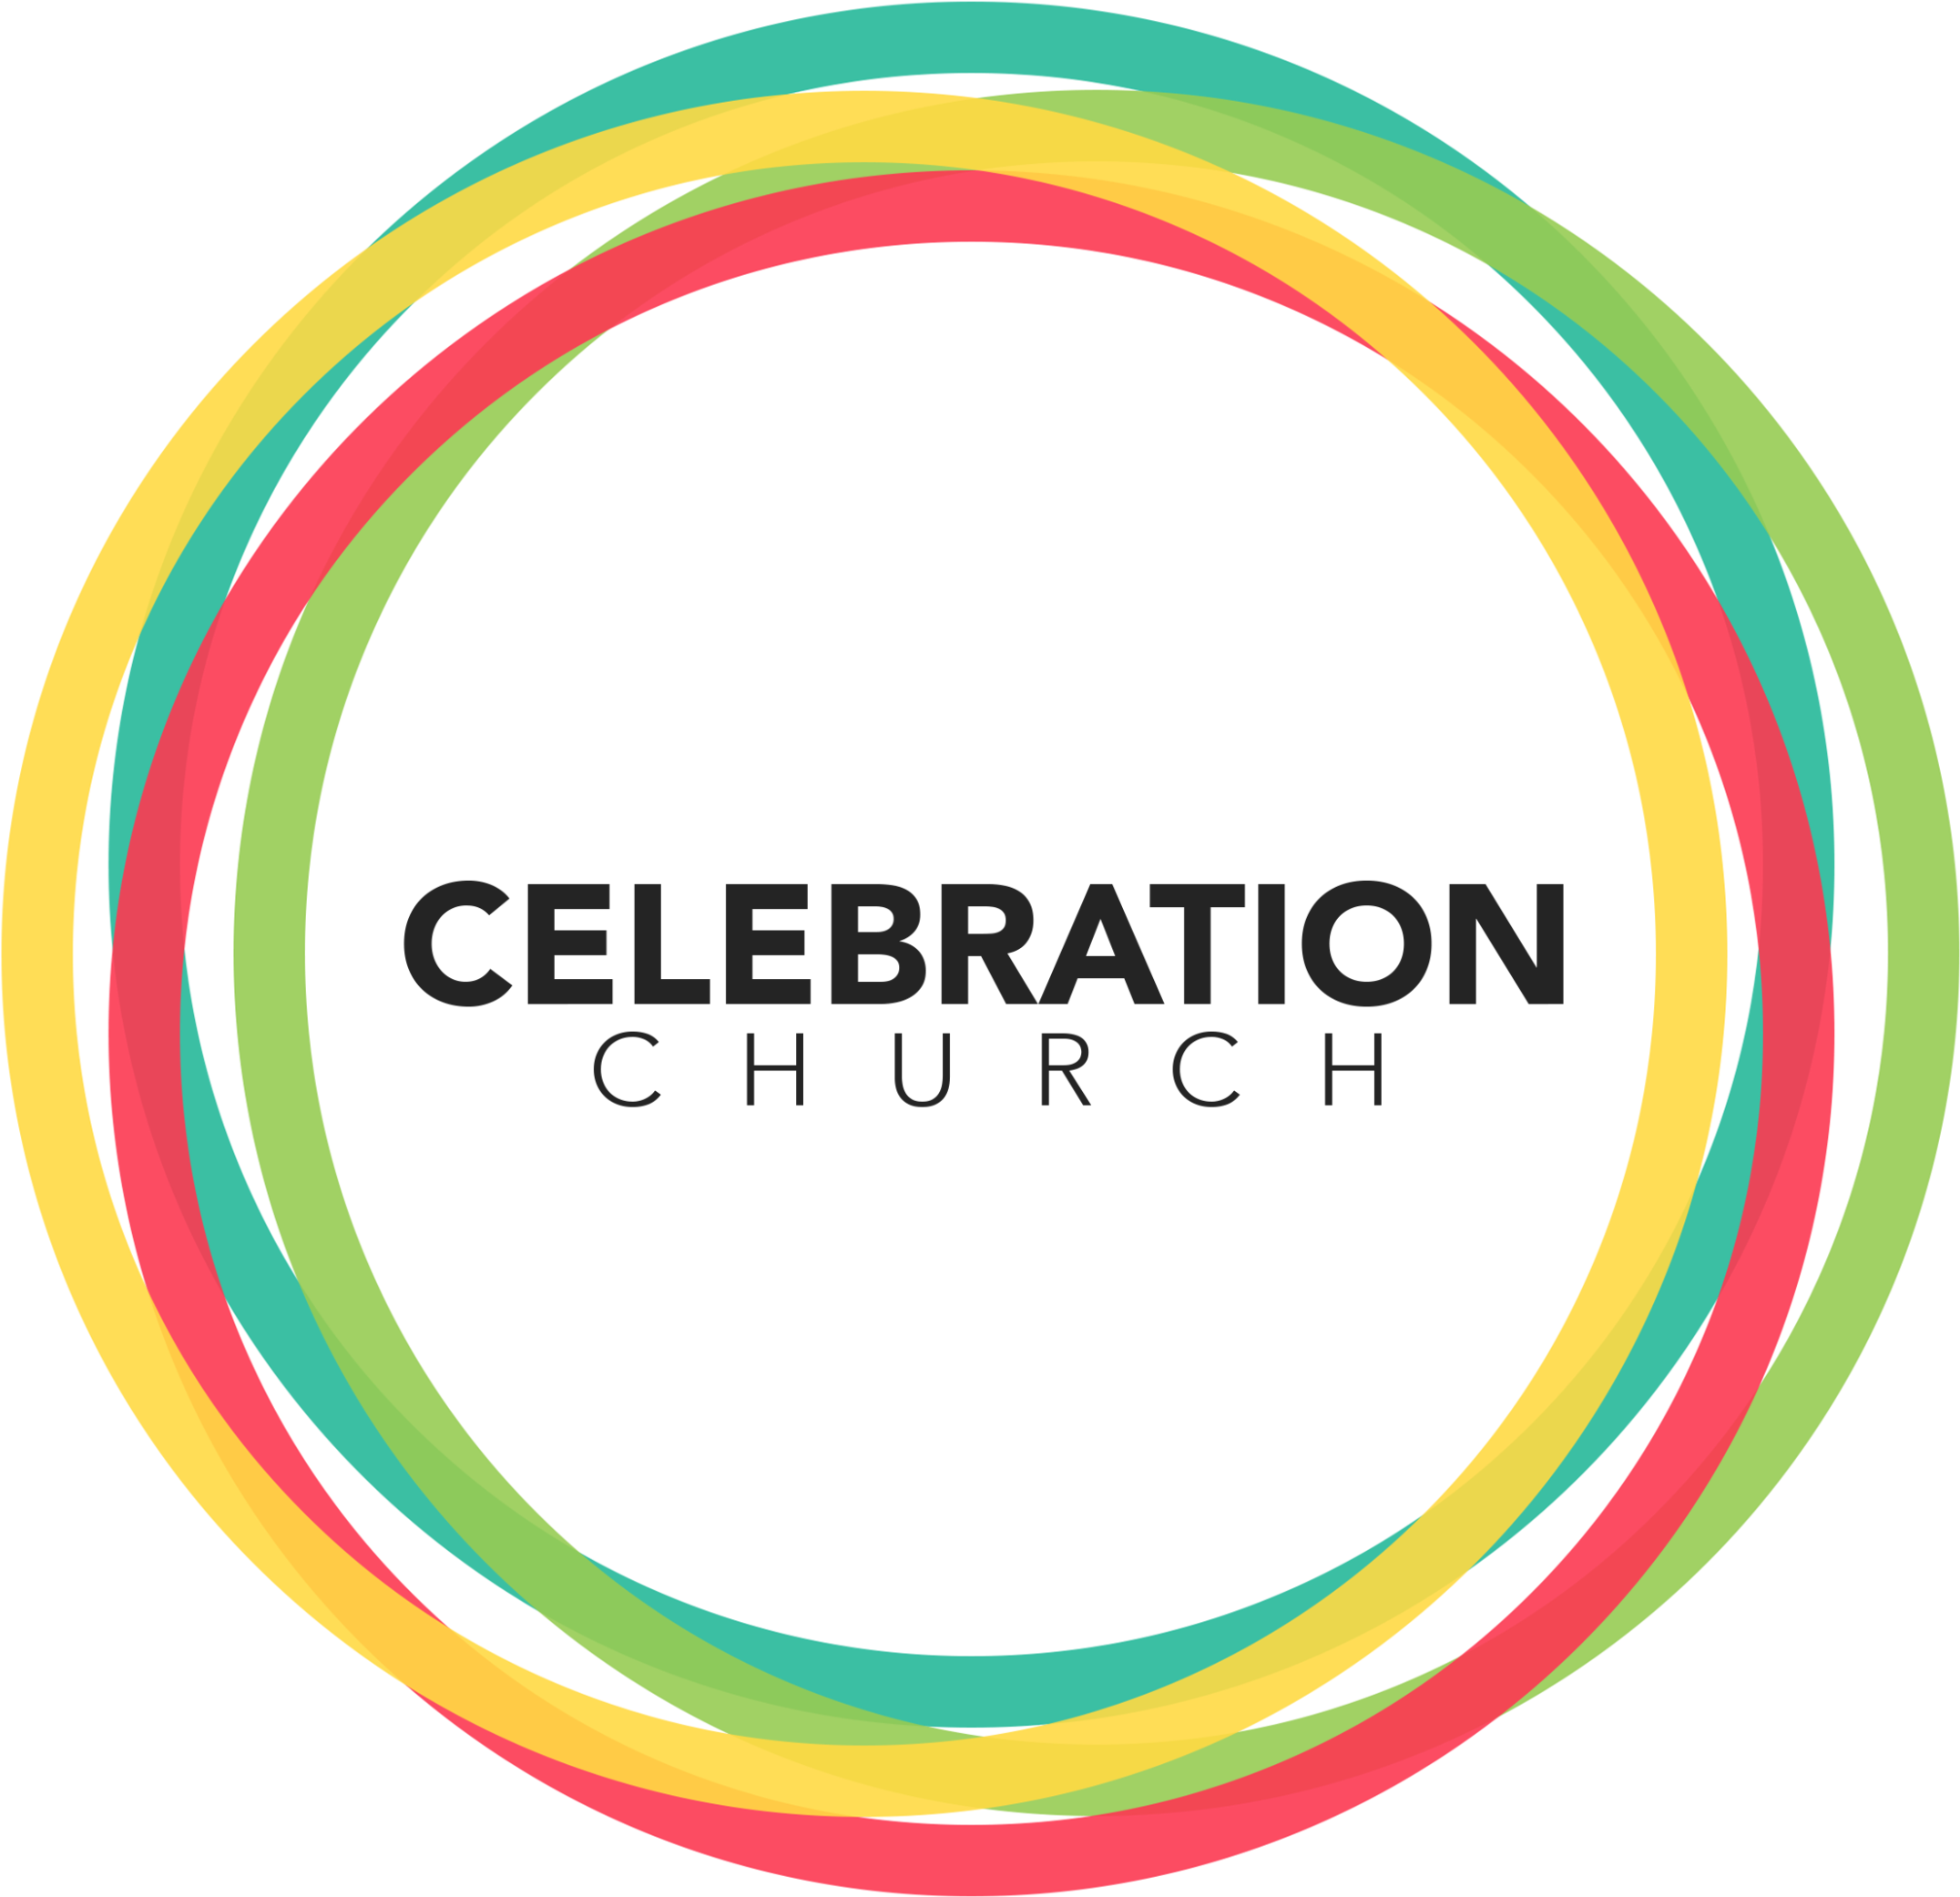 Celebration Church Logo - Celebration Church (2340x2340), Png Download